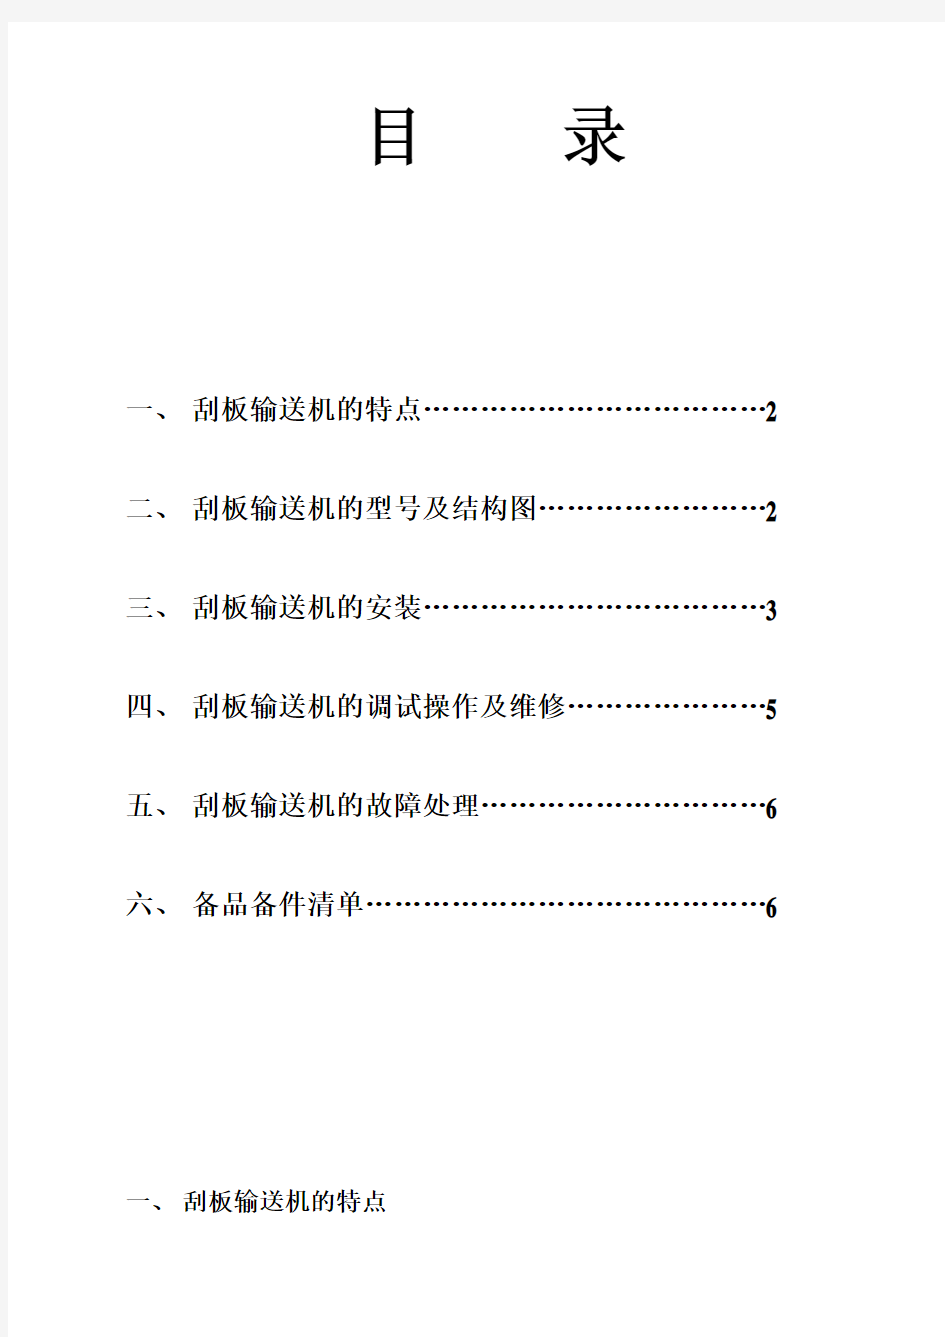 刮板机安装使用说明书-中文